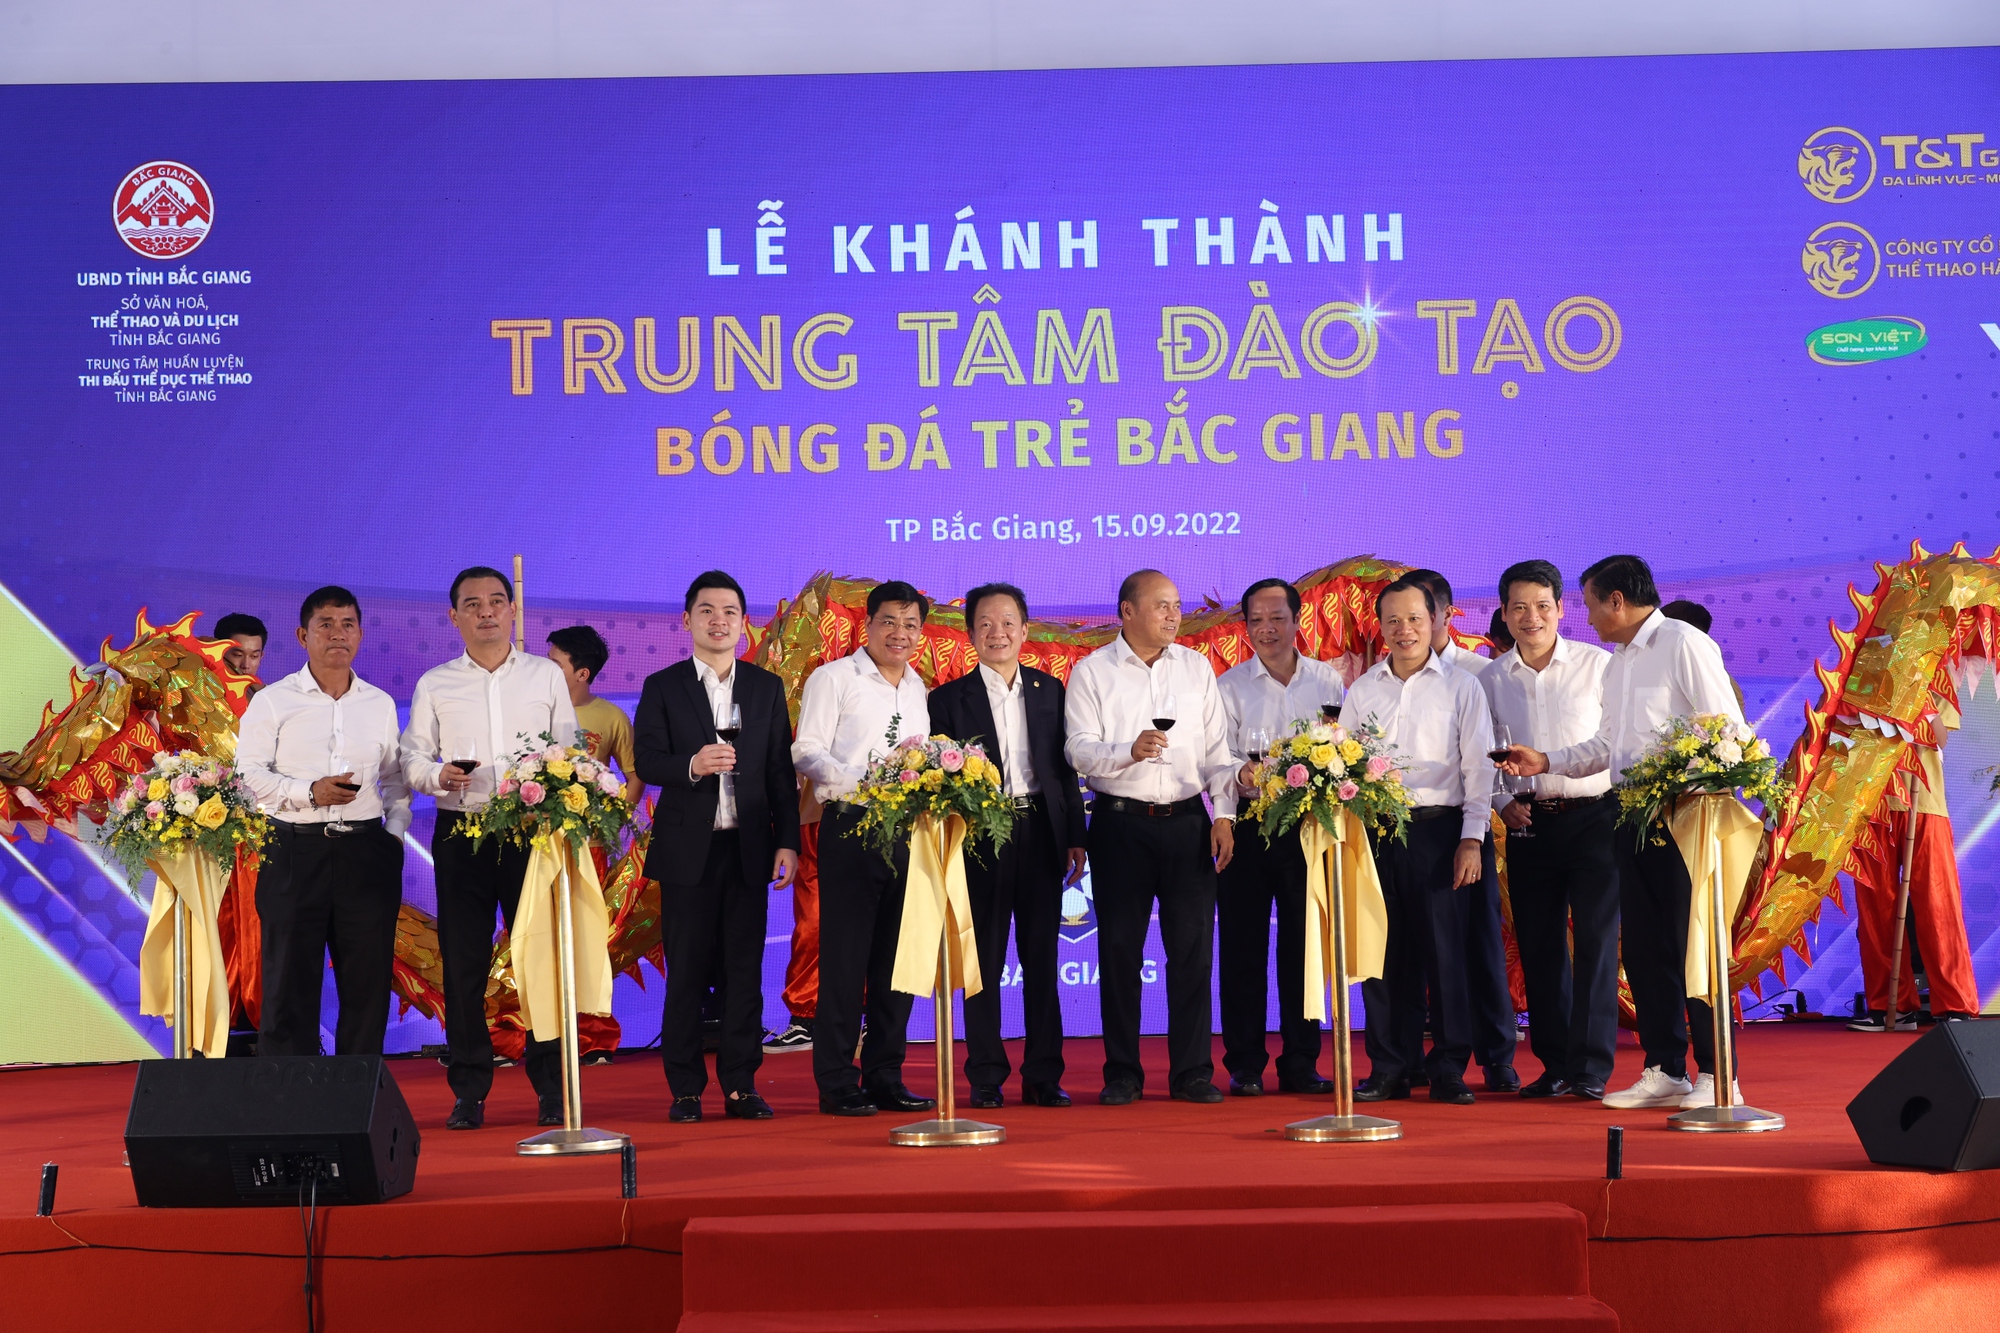 CLB Hà Nội khánh thành Trung tâm đào tạo bóng đá trẻ Bắc Giang: Đi tìm Quang Hải, Văn Hậu 2.0 - Ảnh 3.